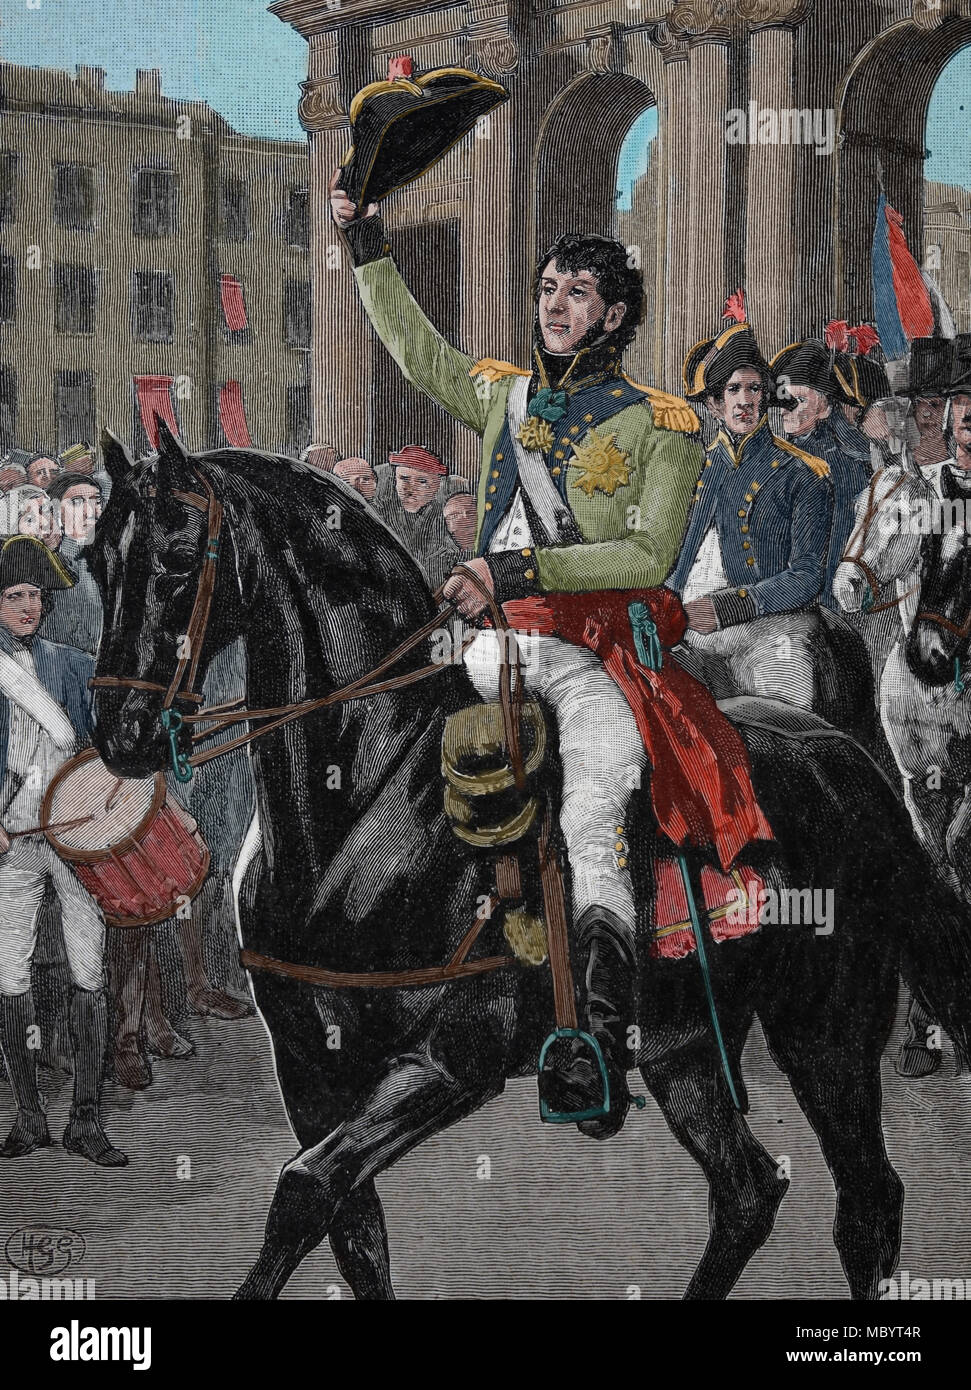 La guerre péninsulaire (1807-1814). Guerres napoléoniennes. Le général Murat (1767-1815) l'entrée à Madrid, le 23 mars 1808. Banque D'Images